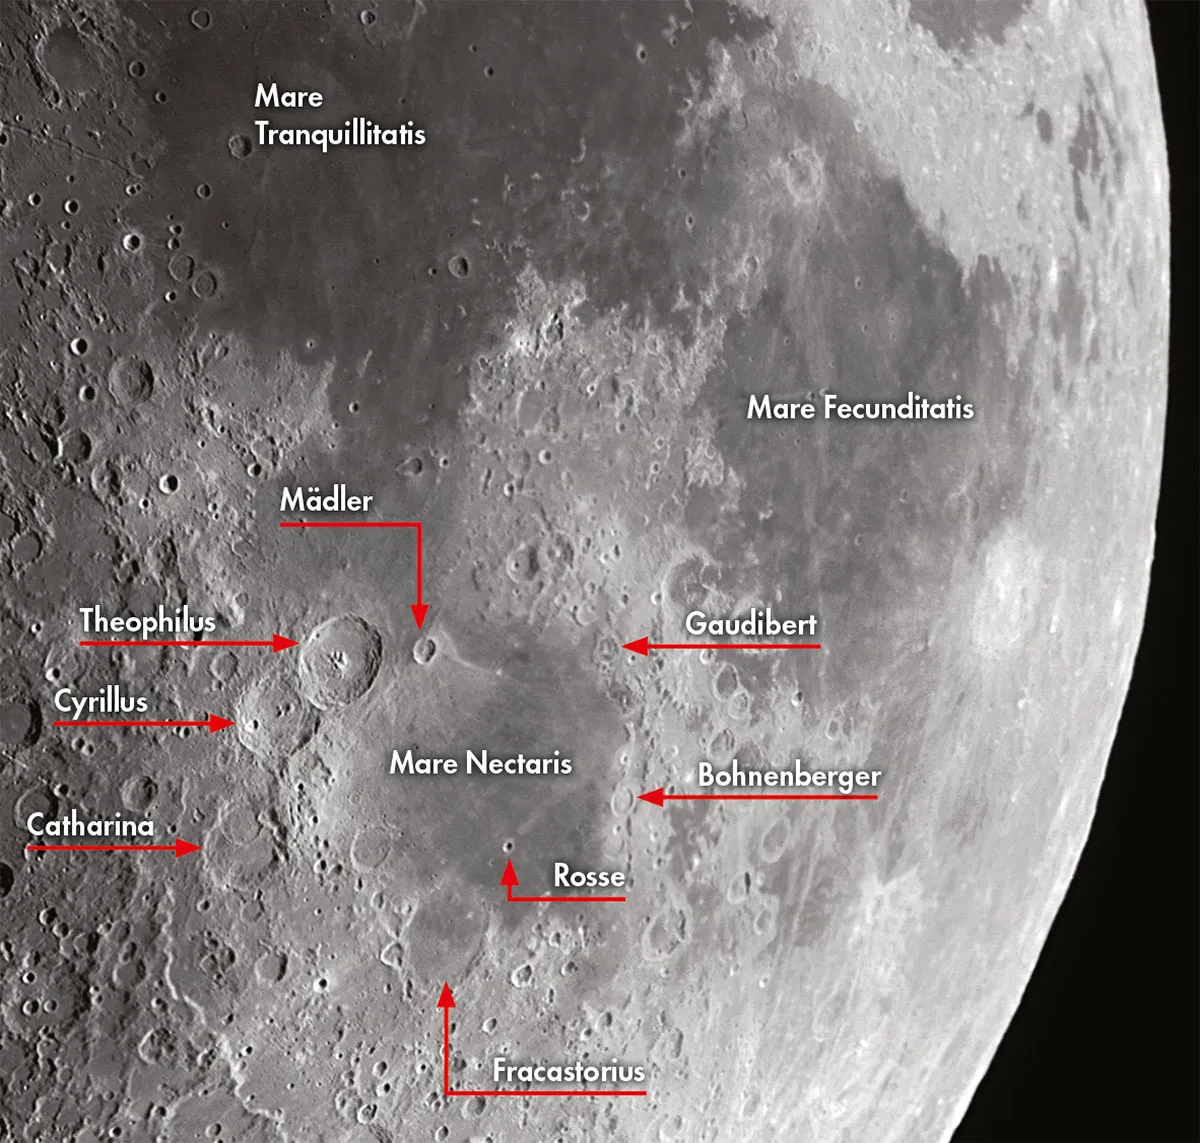 Mare Tranquillitatis, Mare Fecunditatis and Mare Nectaris on the Moon.